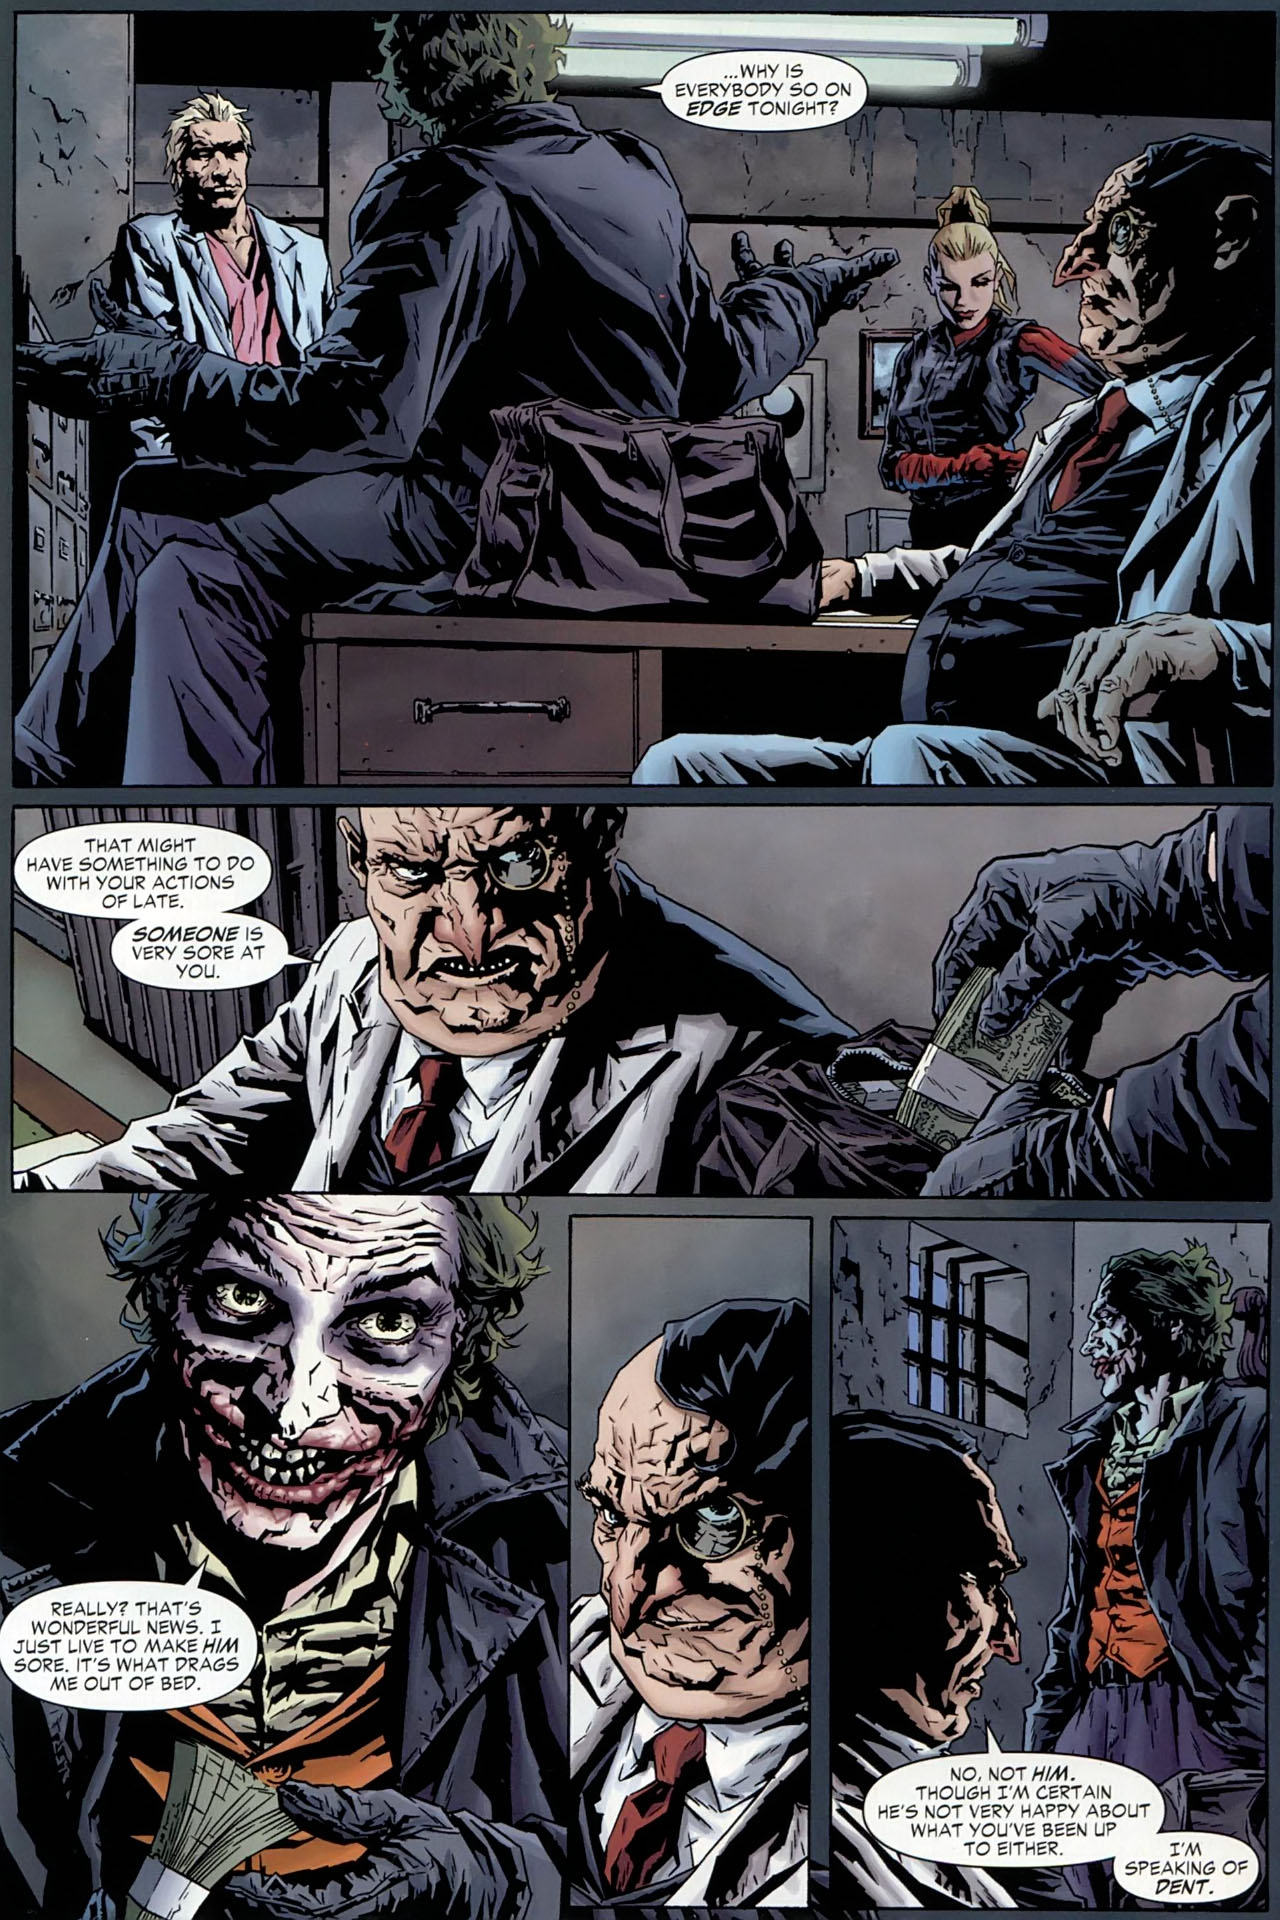 The Joker - 2 of 4